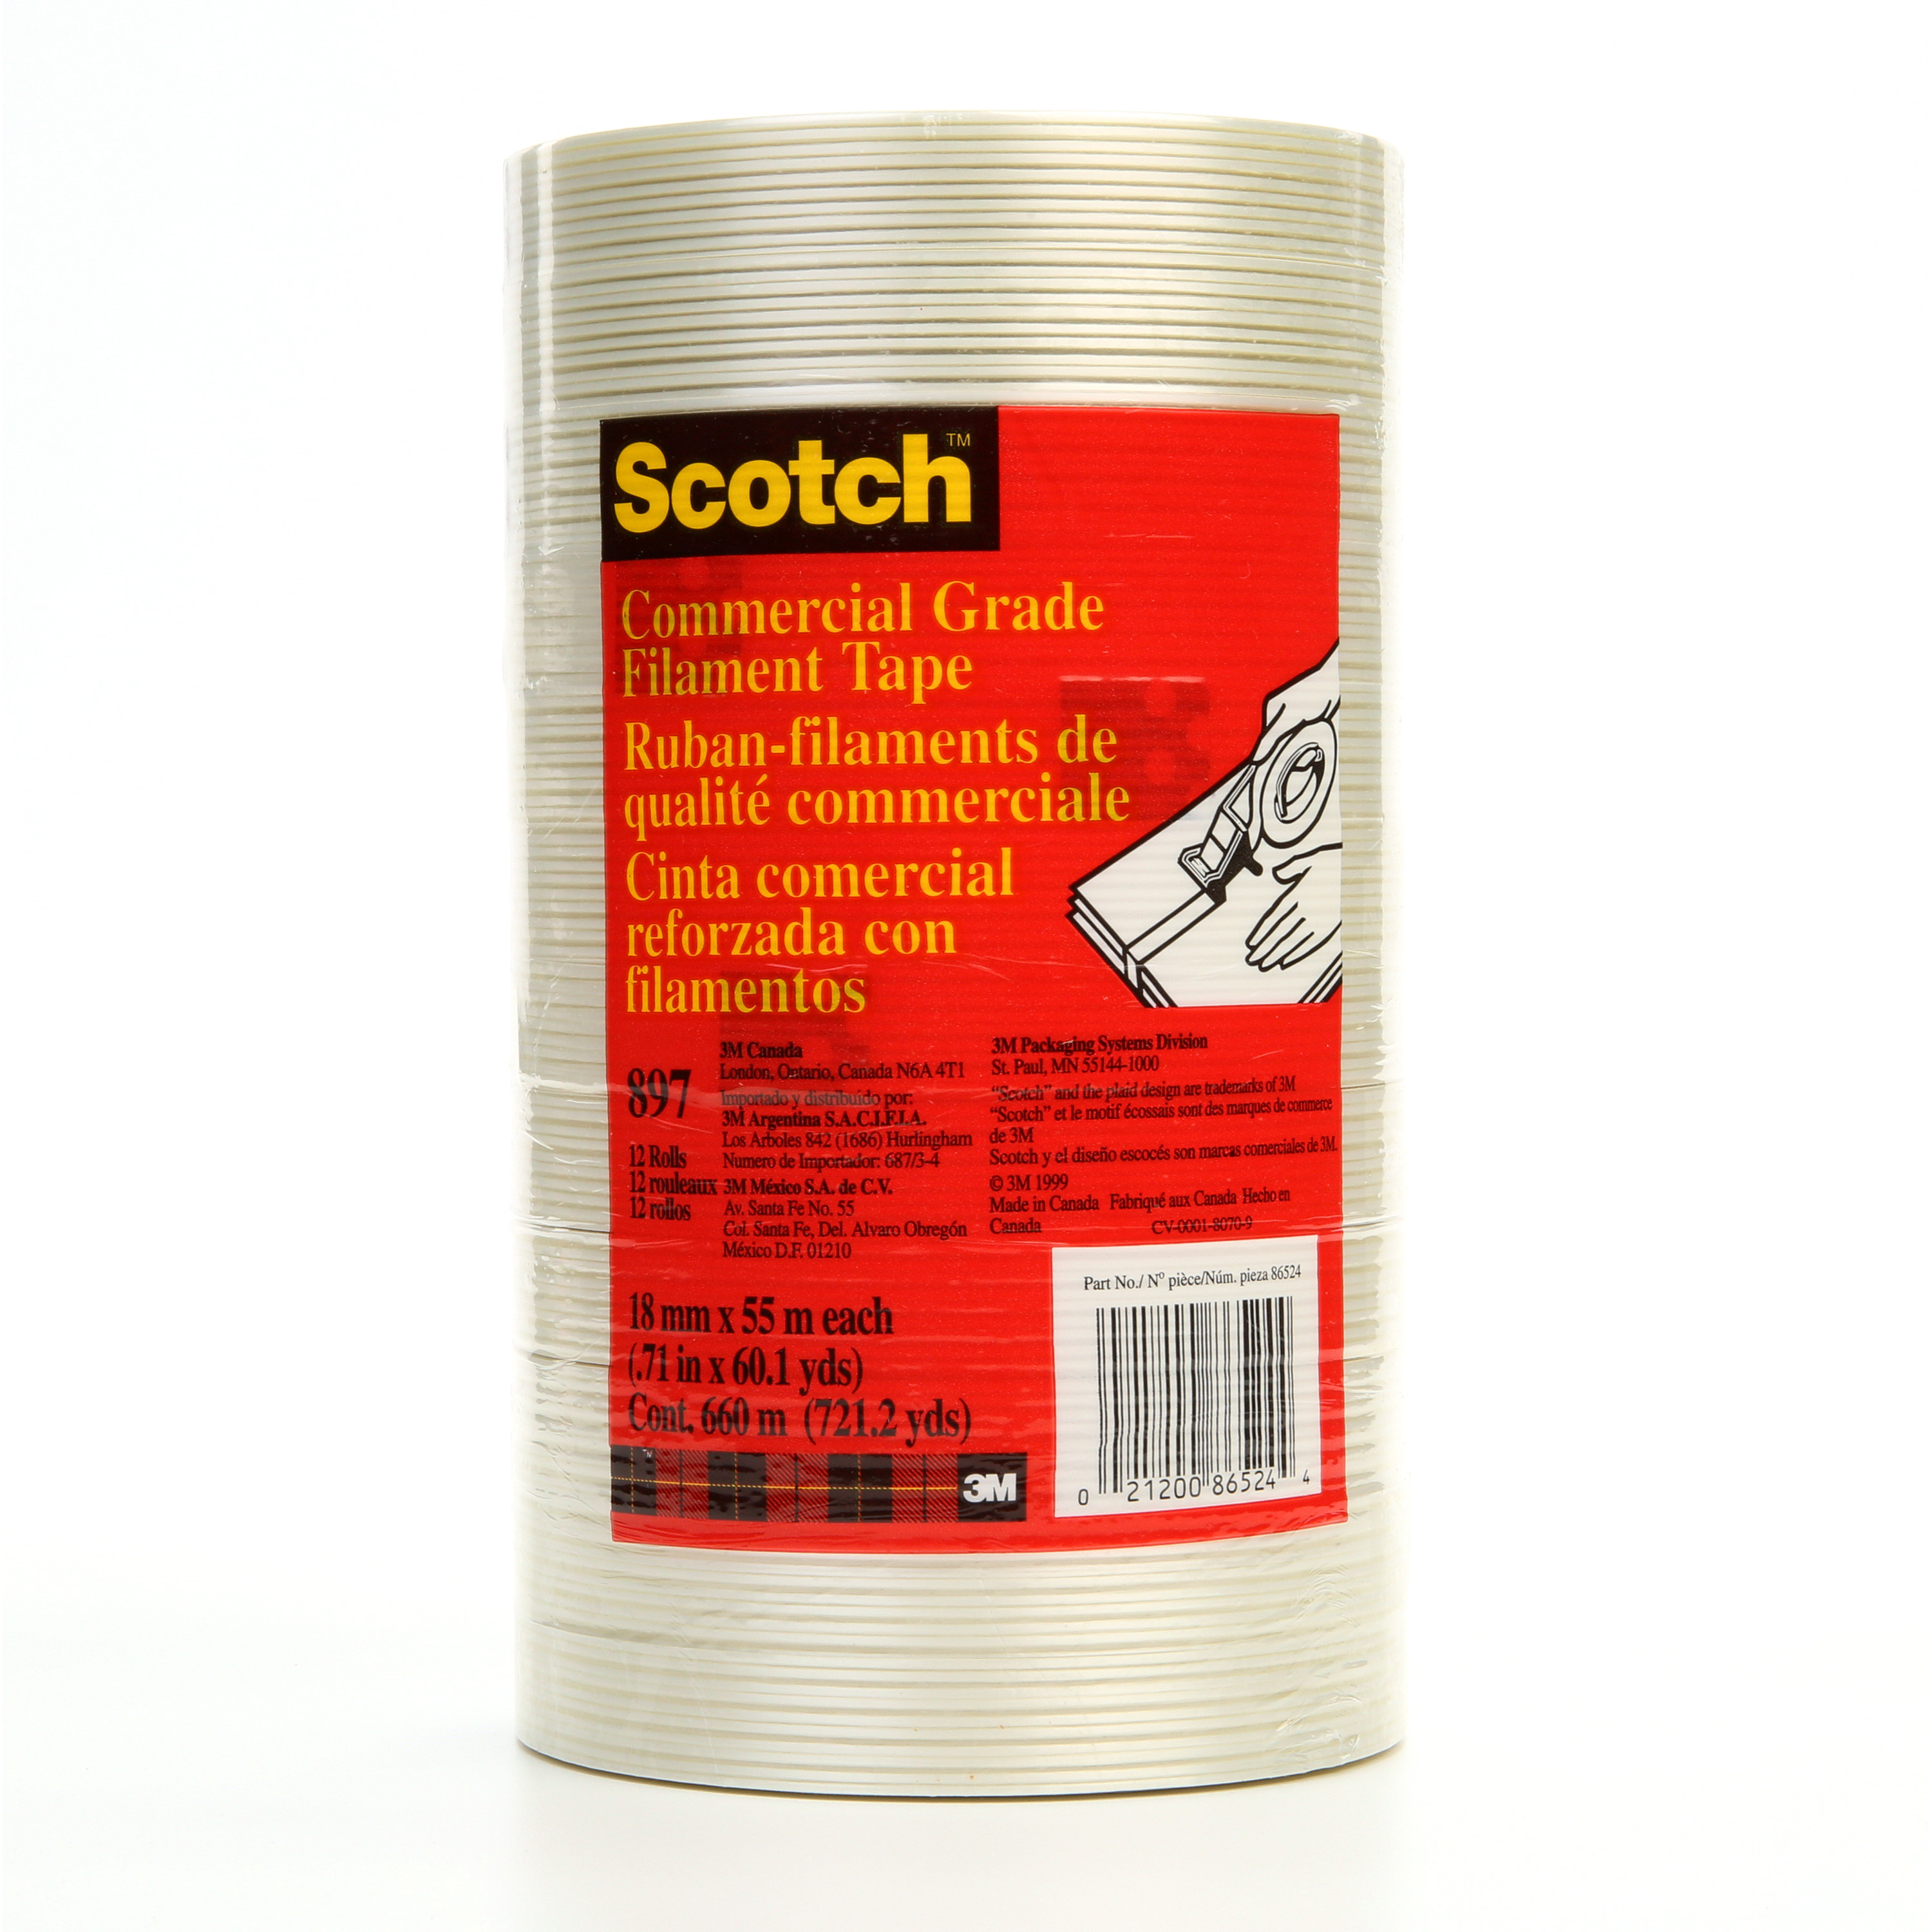 Scotch® Filament Tape 897, Clear, 18 mm x 55 m, 5 mil, 48 rolls per case